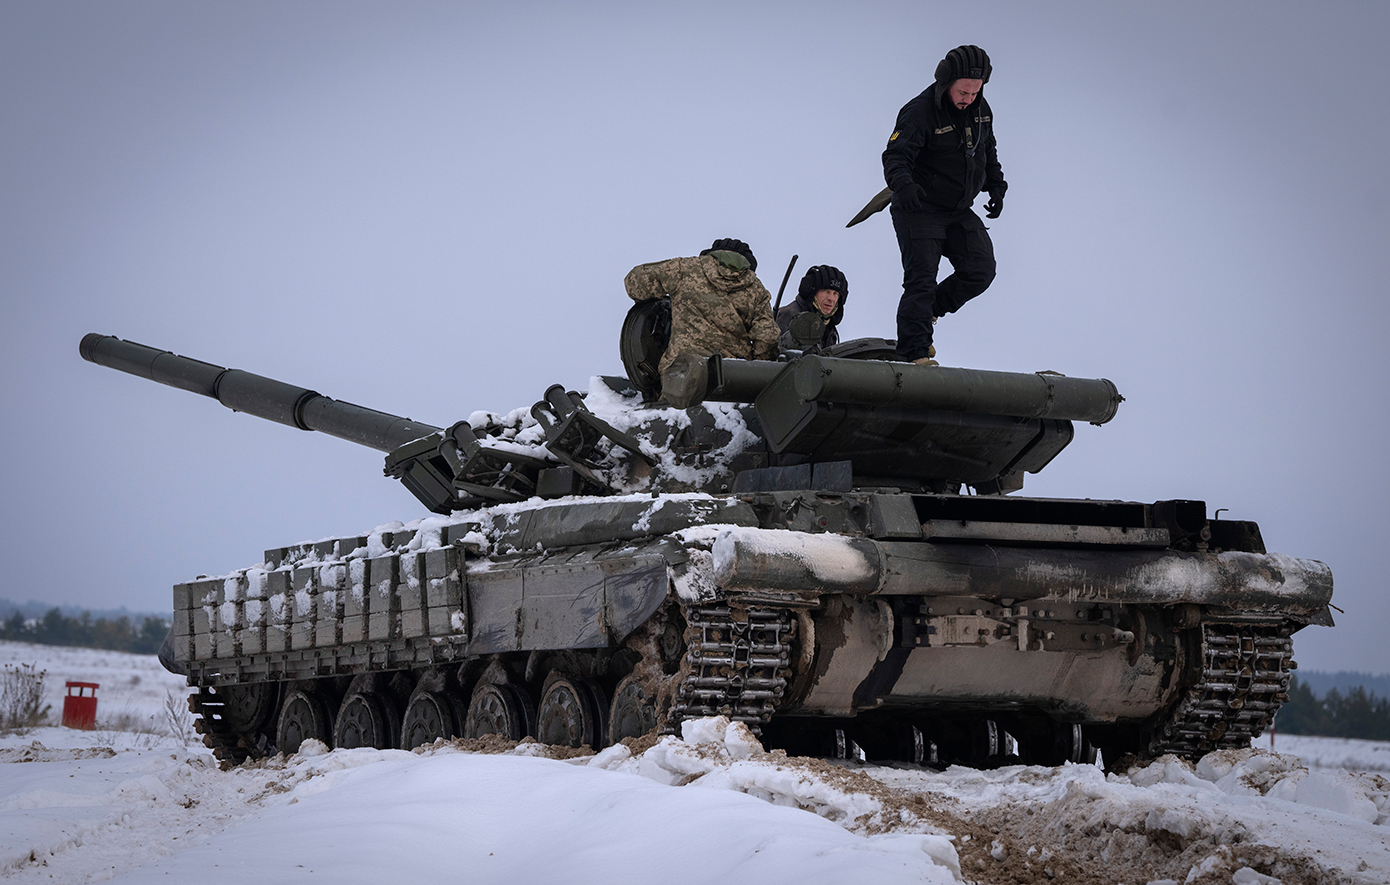 Η άσκηση Steadfast Defender του ΝΑΤΟ είναι ένδειξη ότι η συμμαχία ετοιμάζεται για σύγκρουση, σύμφωνα με το ρωσικό ΥΠΕΞ